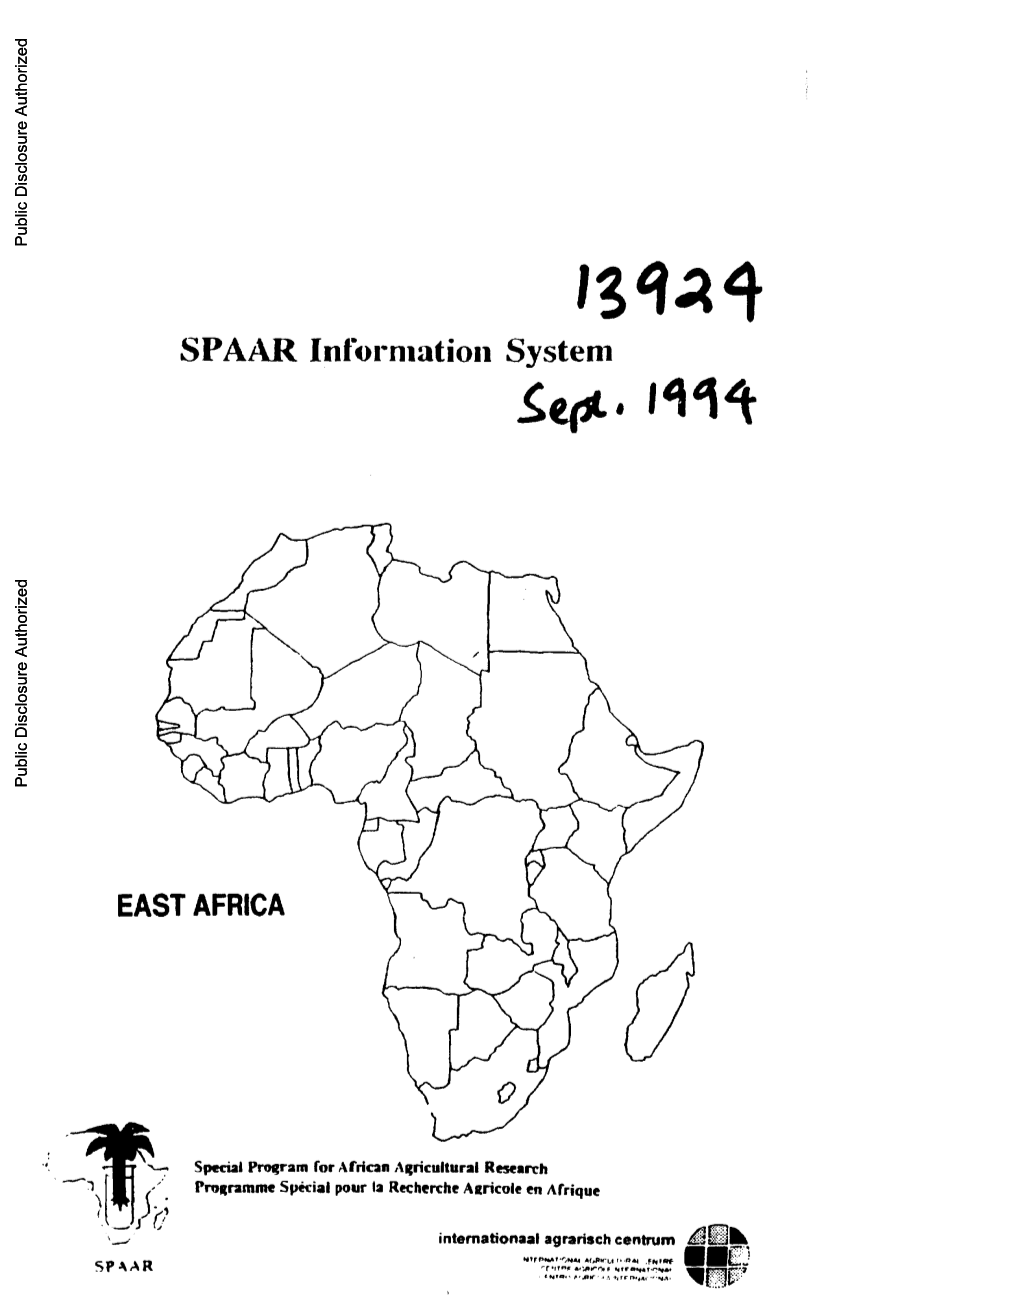 SPAAR Intorniatioii System EAST AFRICA